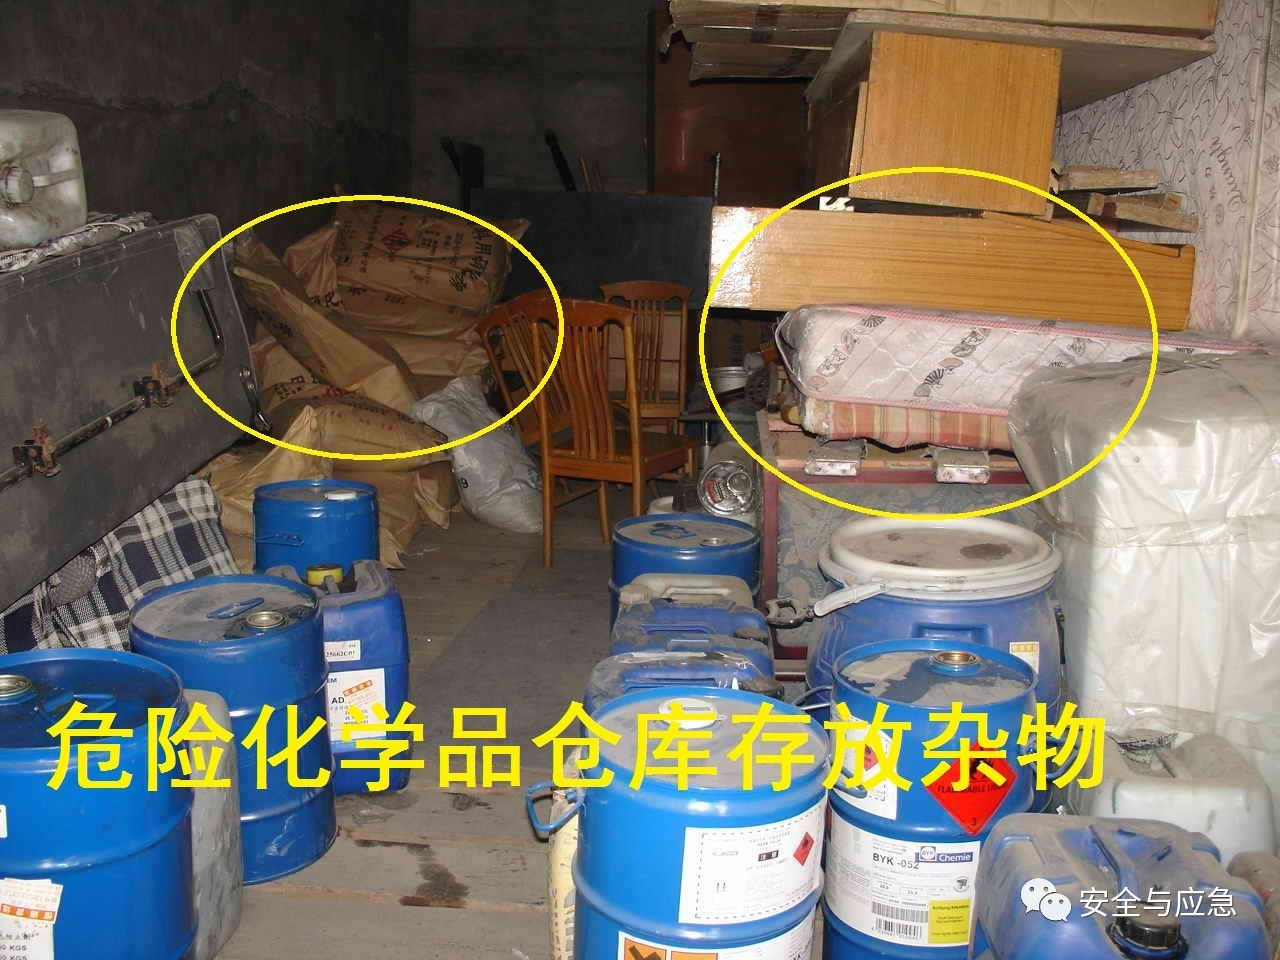 事故分析 | 江苏响水3.21化工厂爆炸事故分析